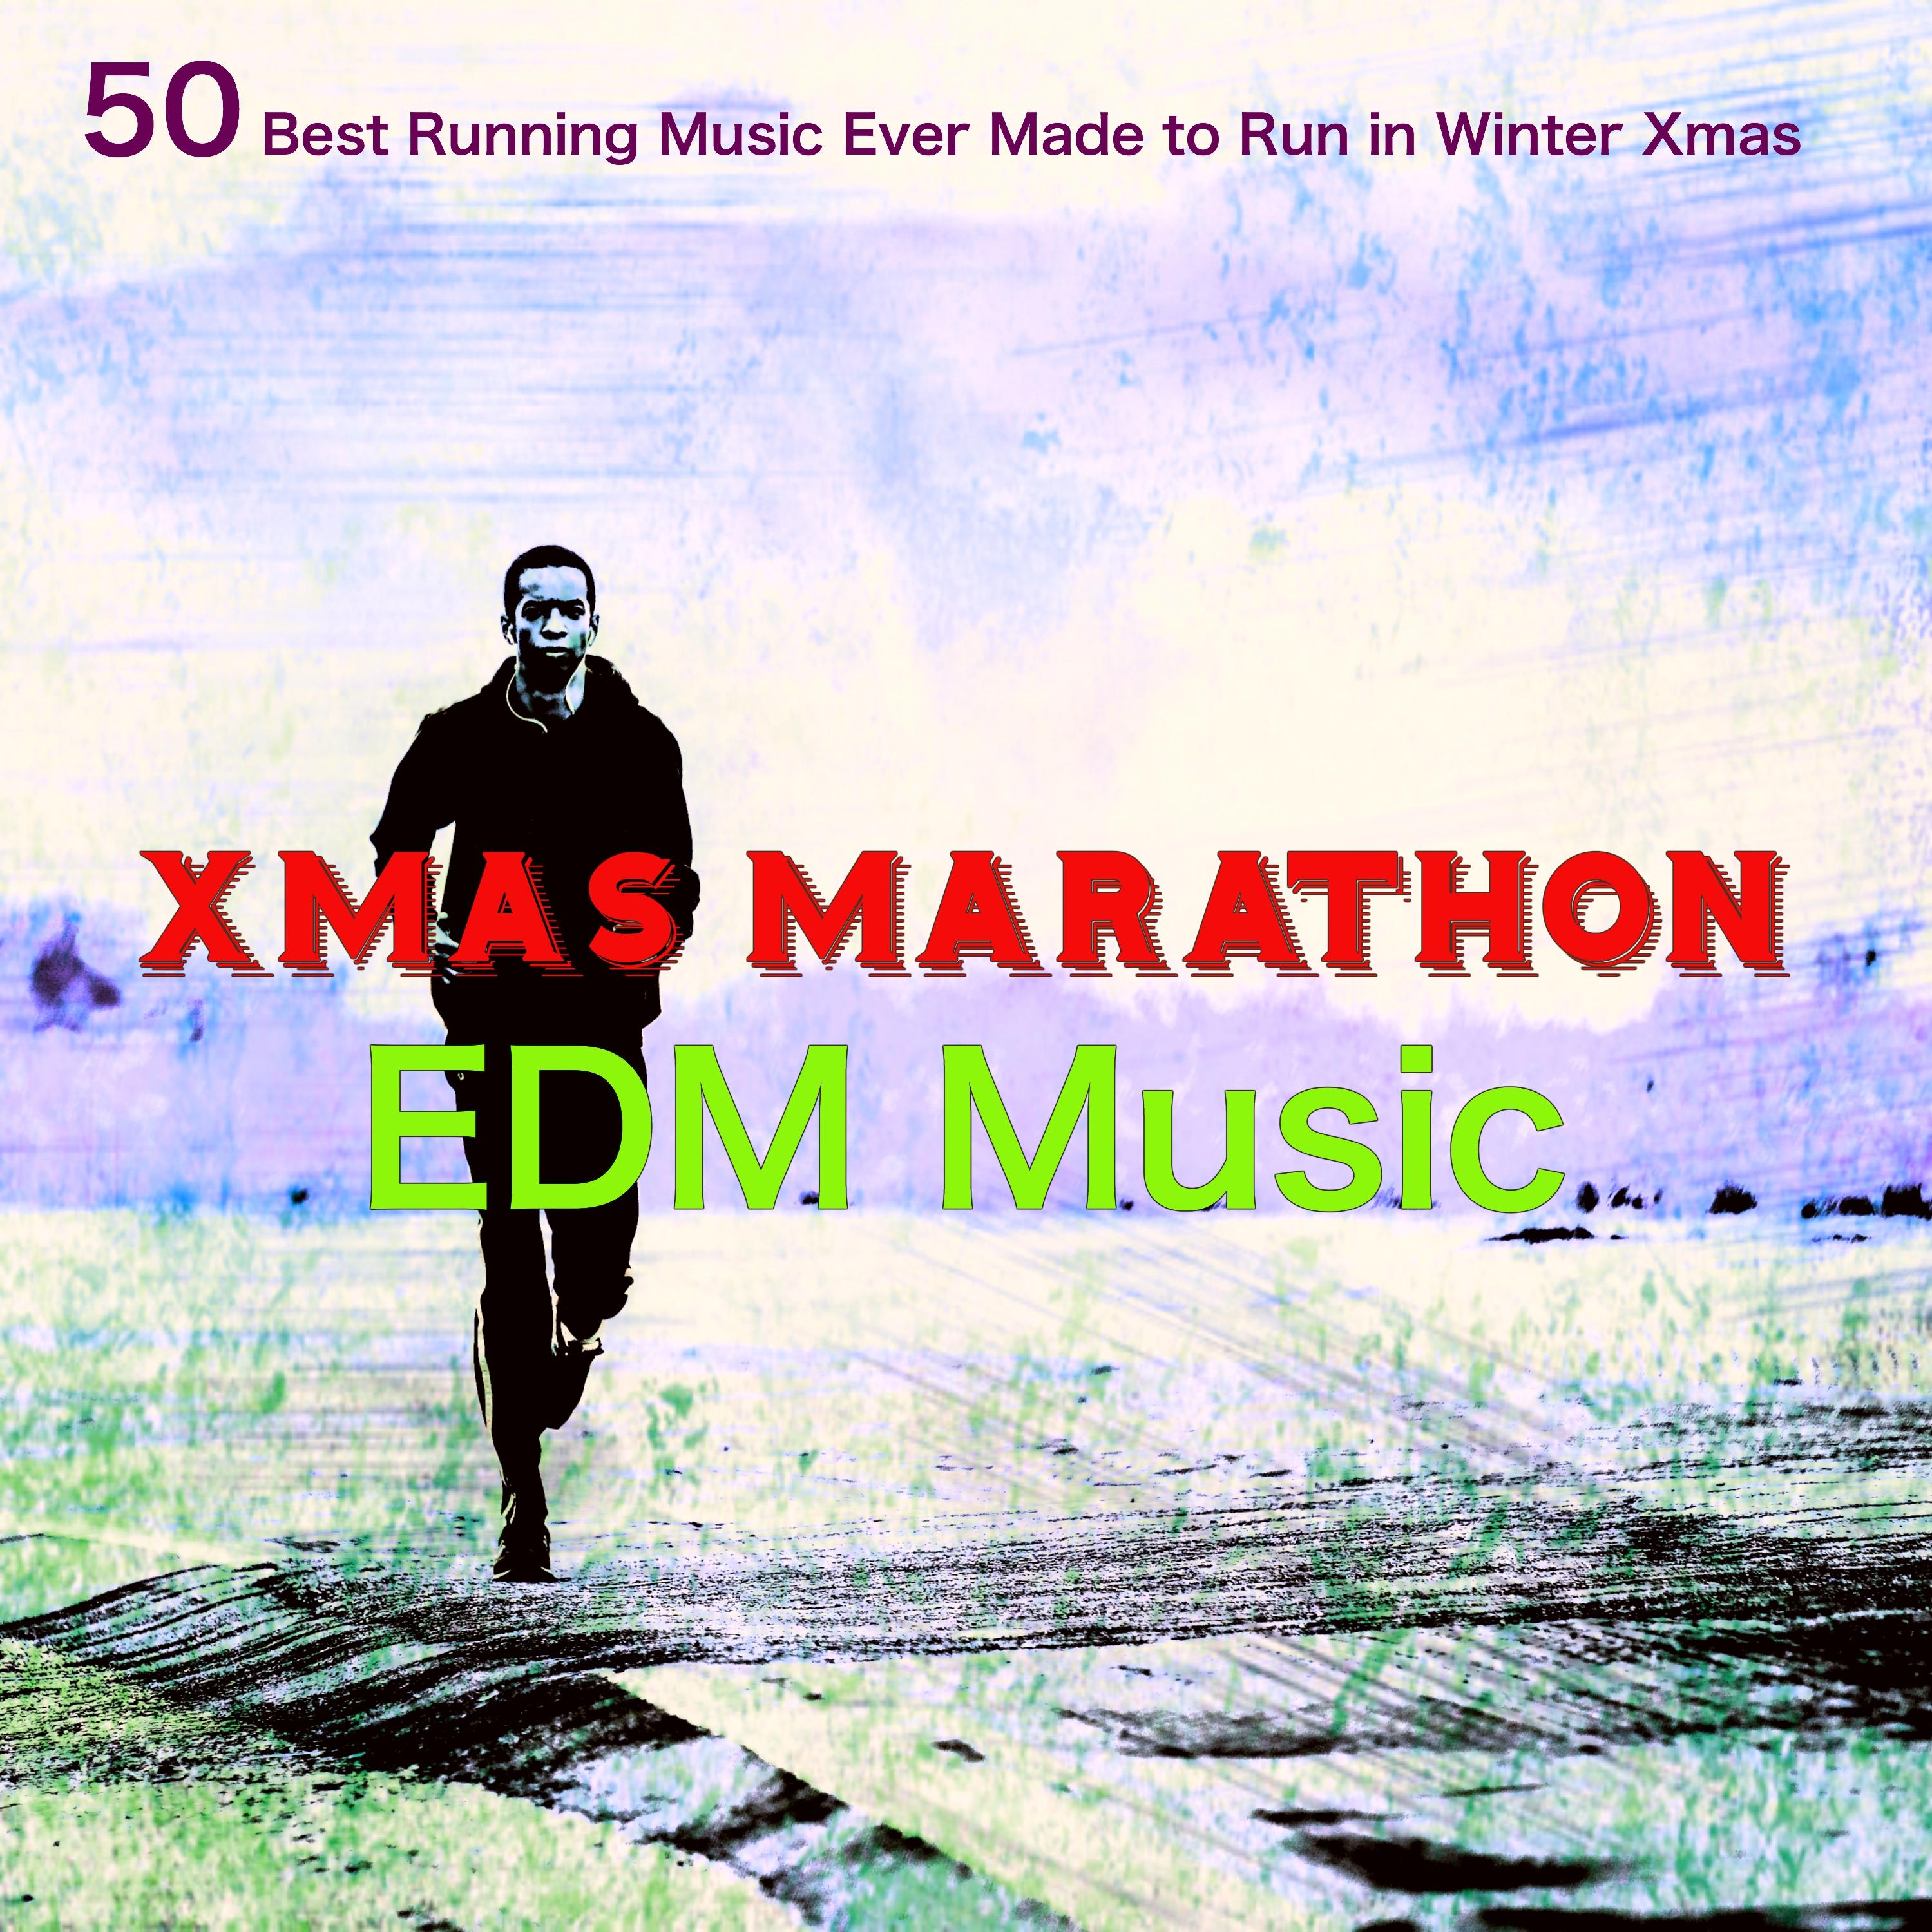 Xmas Marathon EDM Music – 50 Best Running Music Ever Made to Run in Winter Xmas